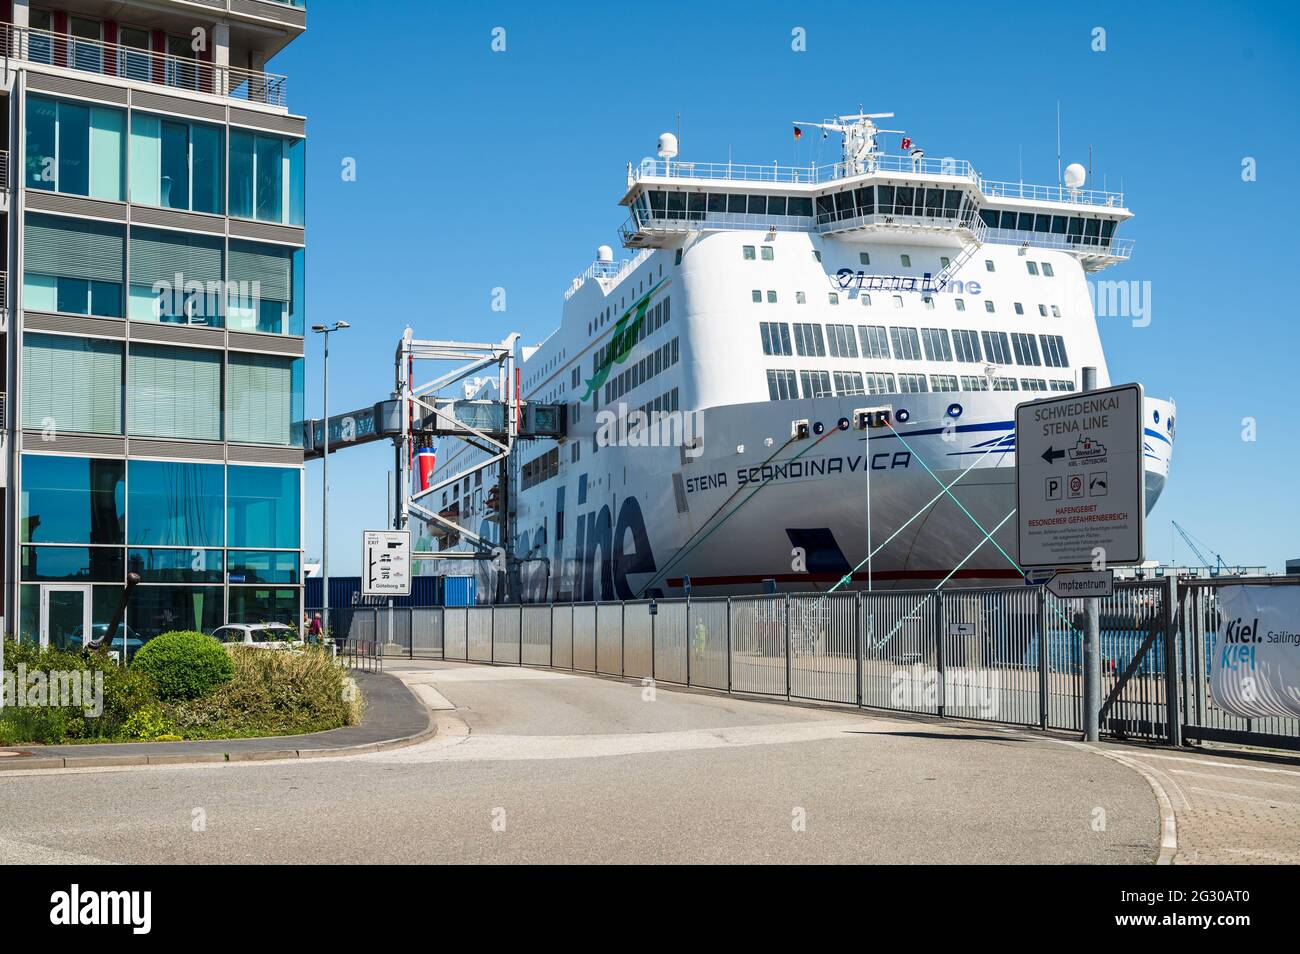 Göteborg kommende Personen- und Autofähre Stena Scandinavica der Stena Line bedient den Kieler Hafen mit einer täg Foto Stock